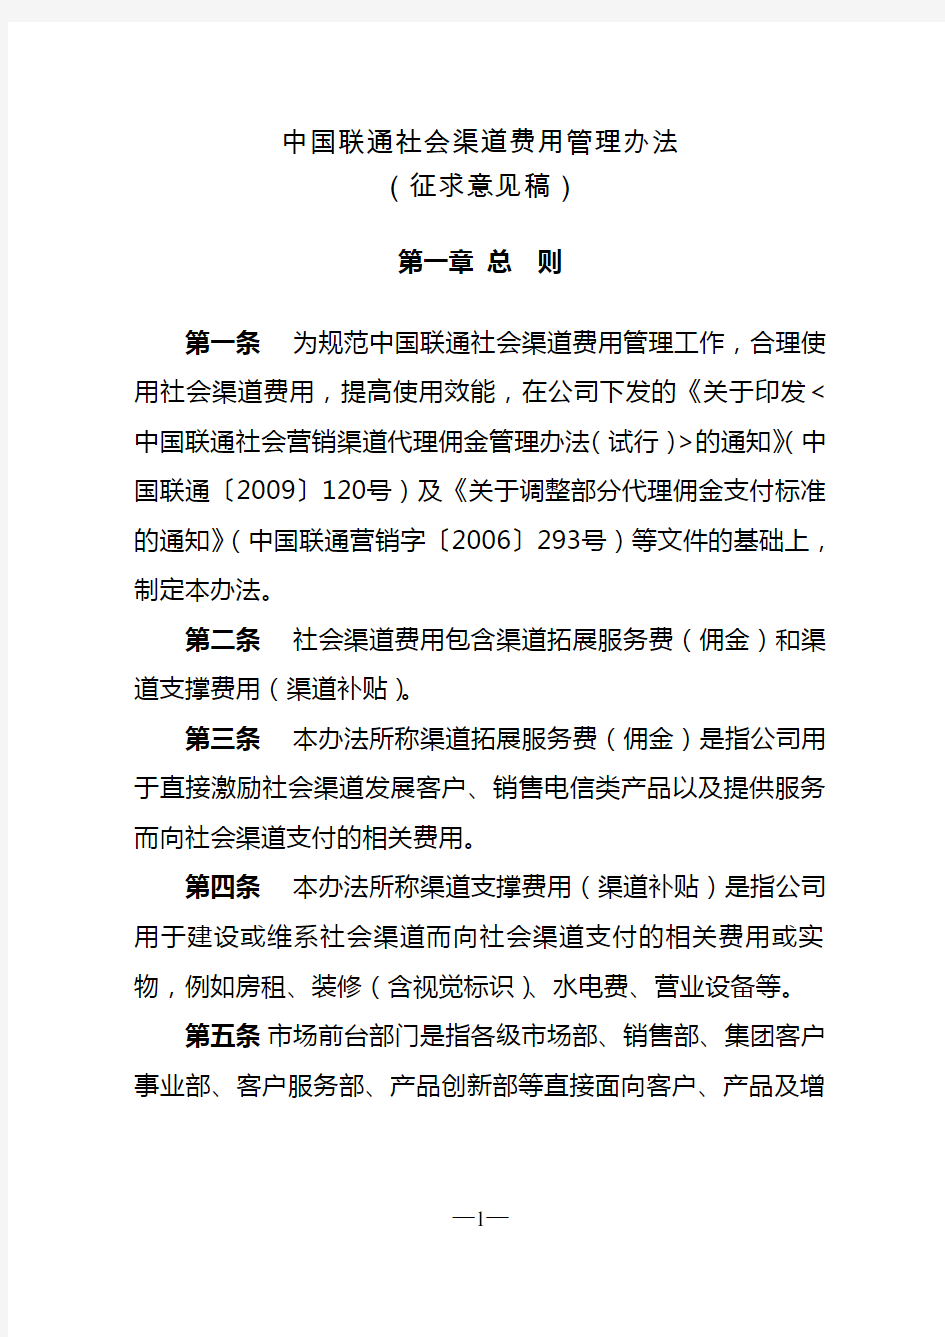 (完整版)中国联通社会渠道费用管理办法(征求意见稿)